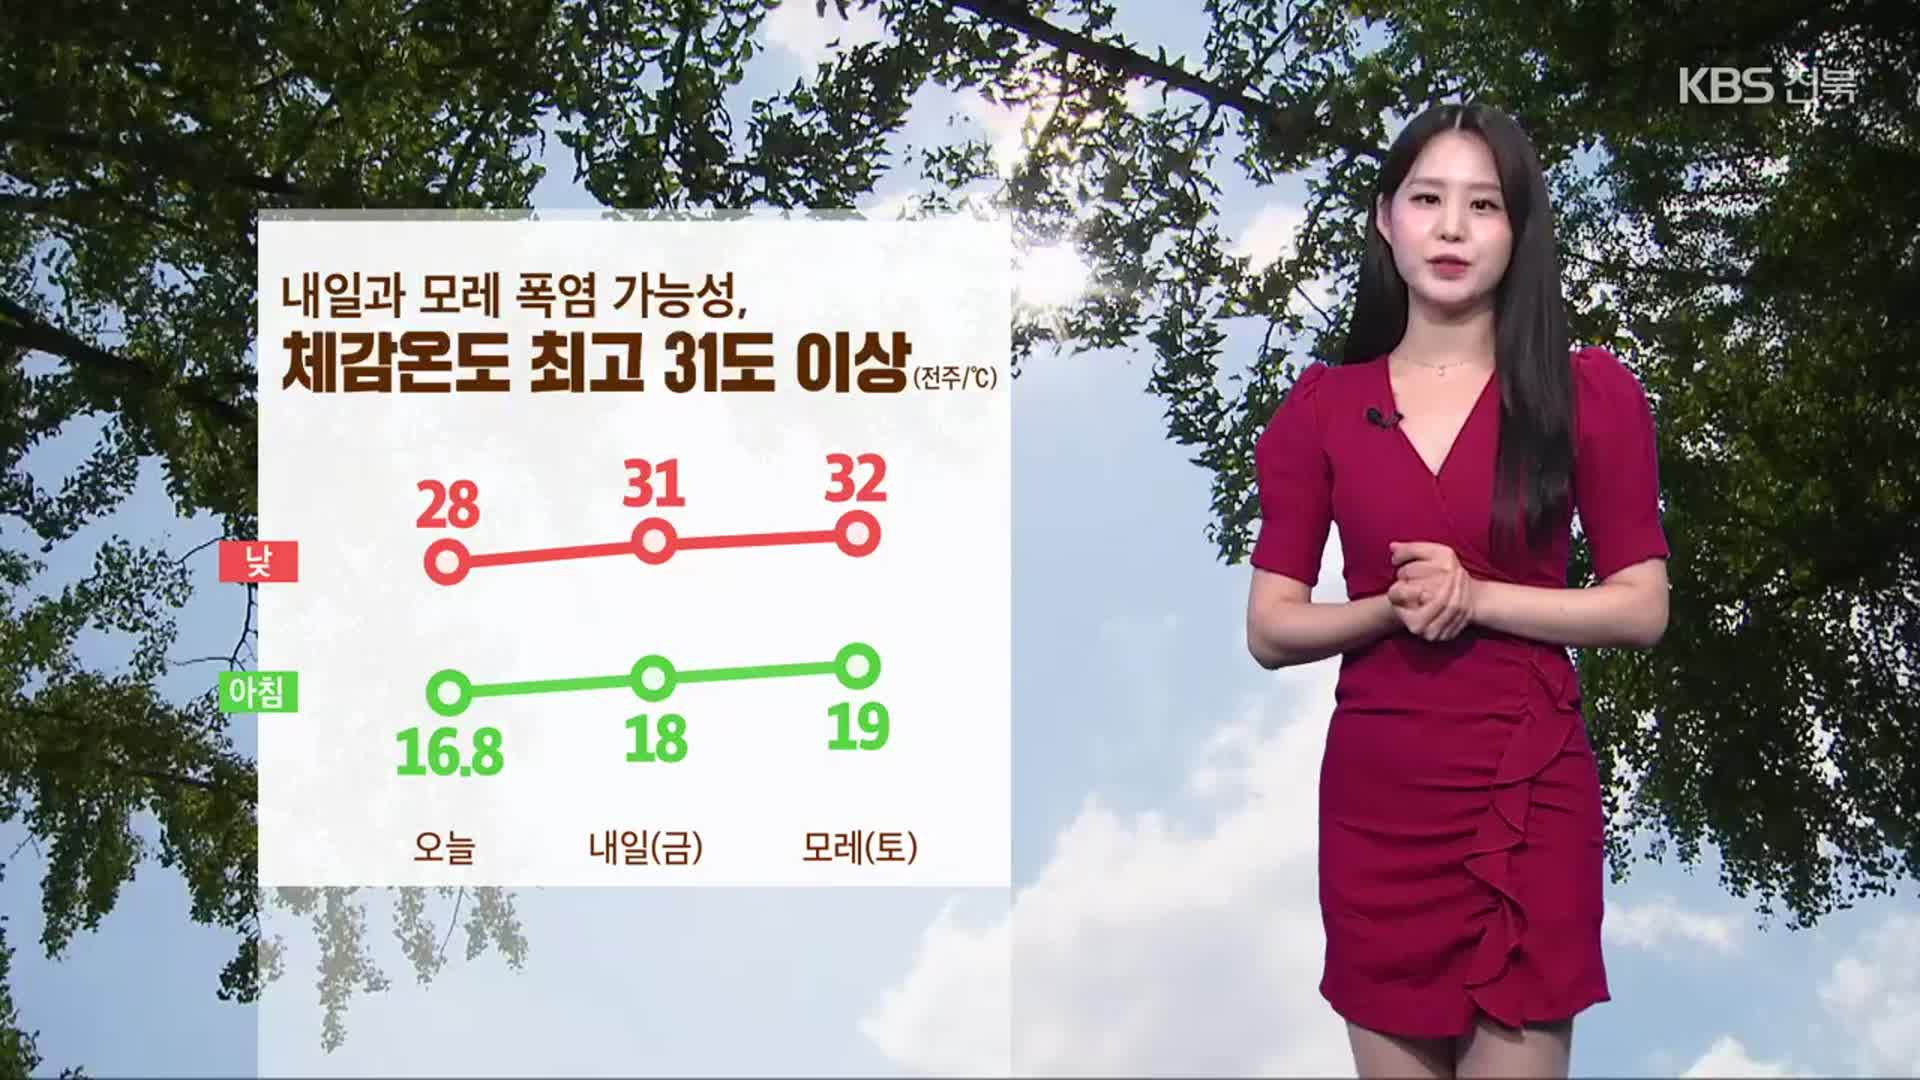 [날씨] 전북 내일과 모레 폭염 가능성, 체감온도 최고 31도 이상